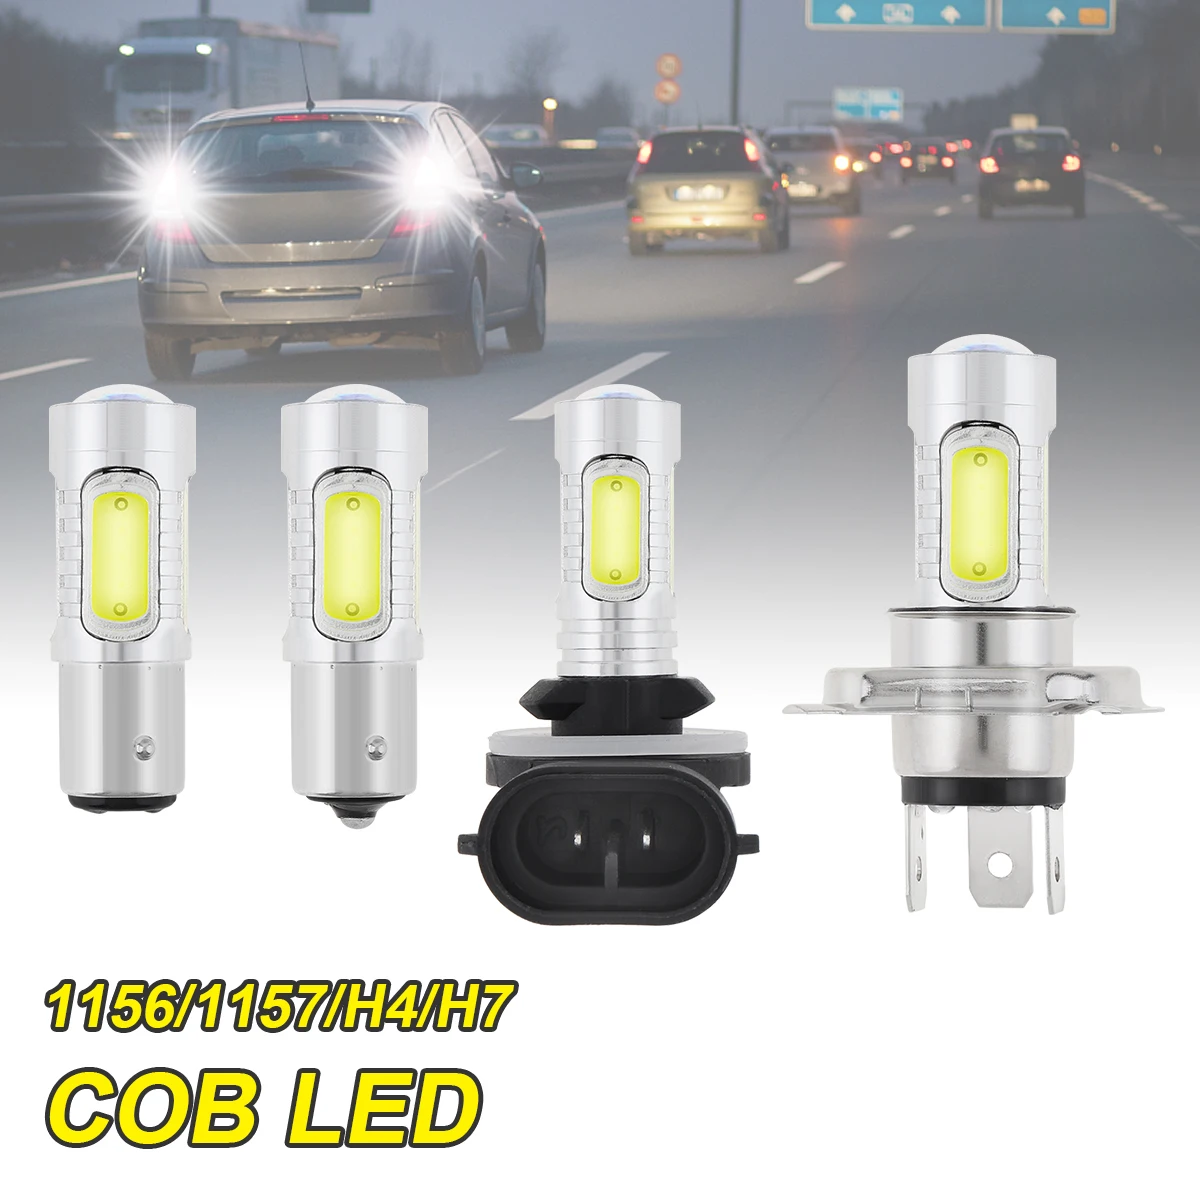 

Car Light Signal Lamp 12V COB White Light 1156 1157 H4 H7 Led Bulbs Reversing Lights Turn Brake Backup Light for Car SUV Auto